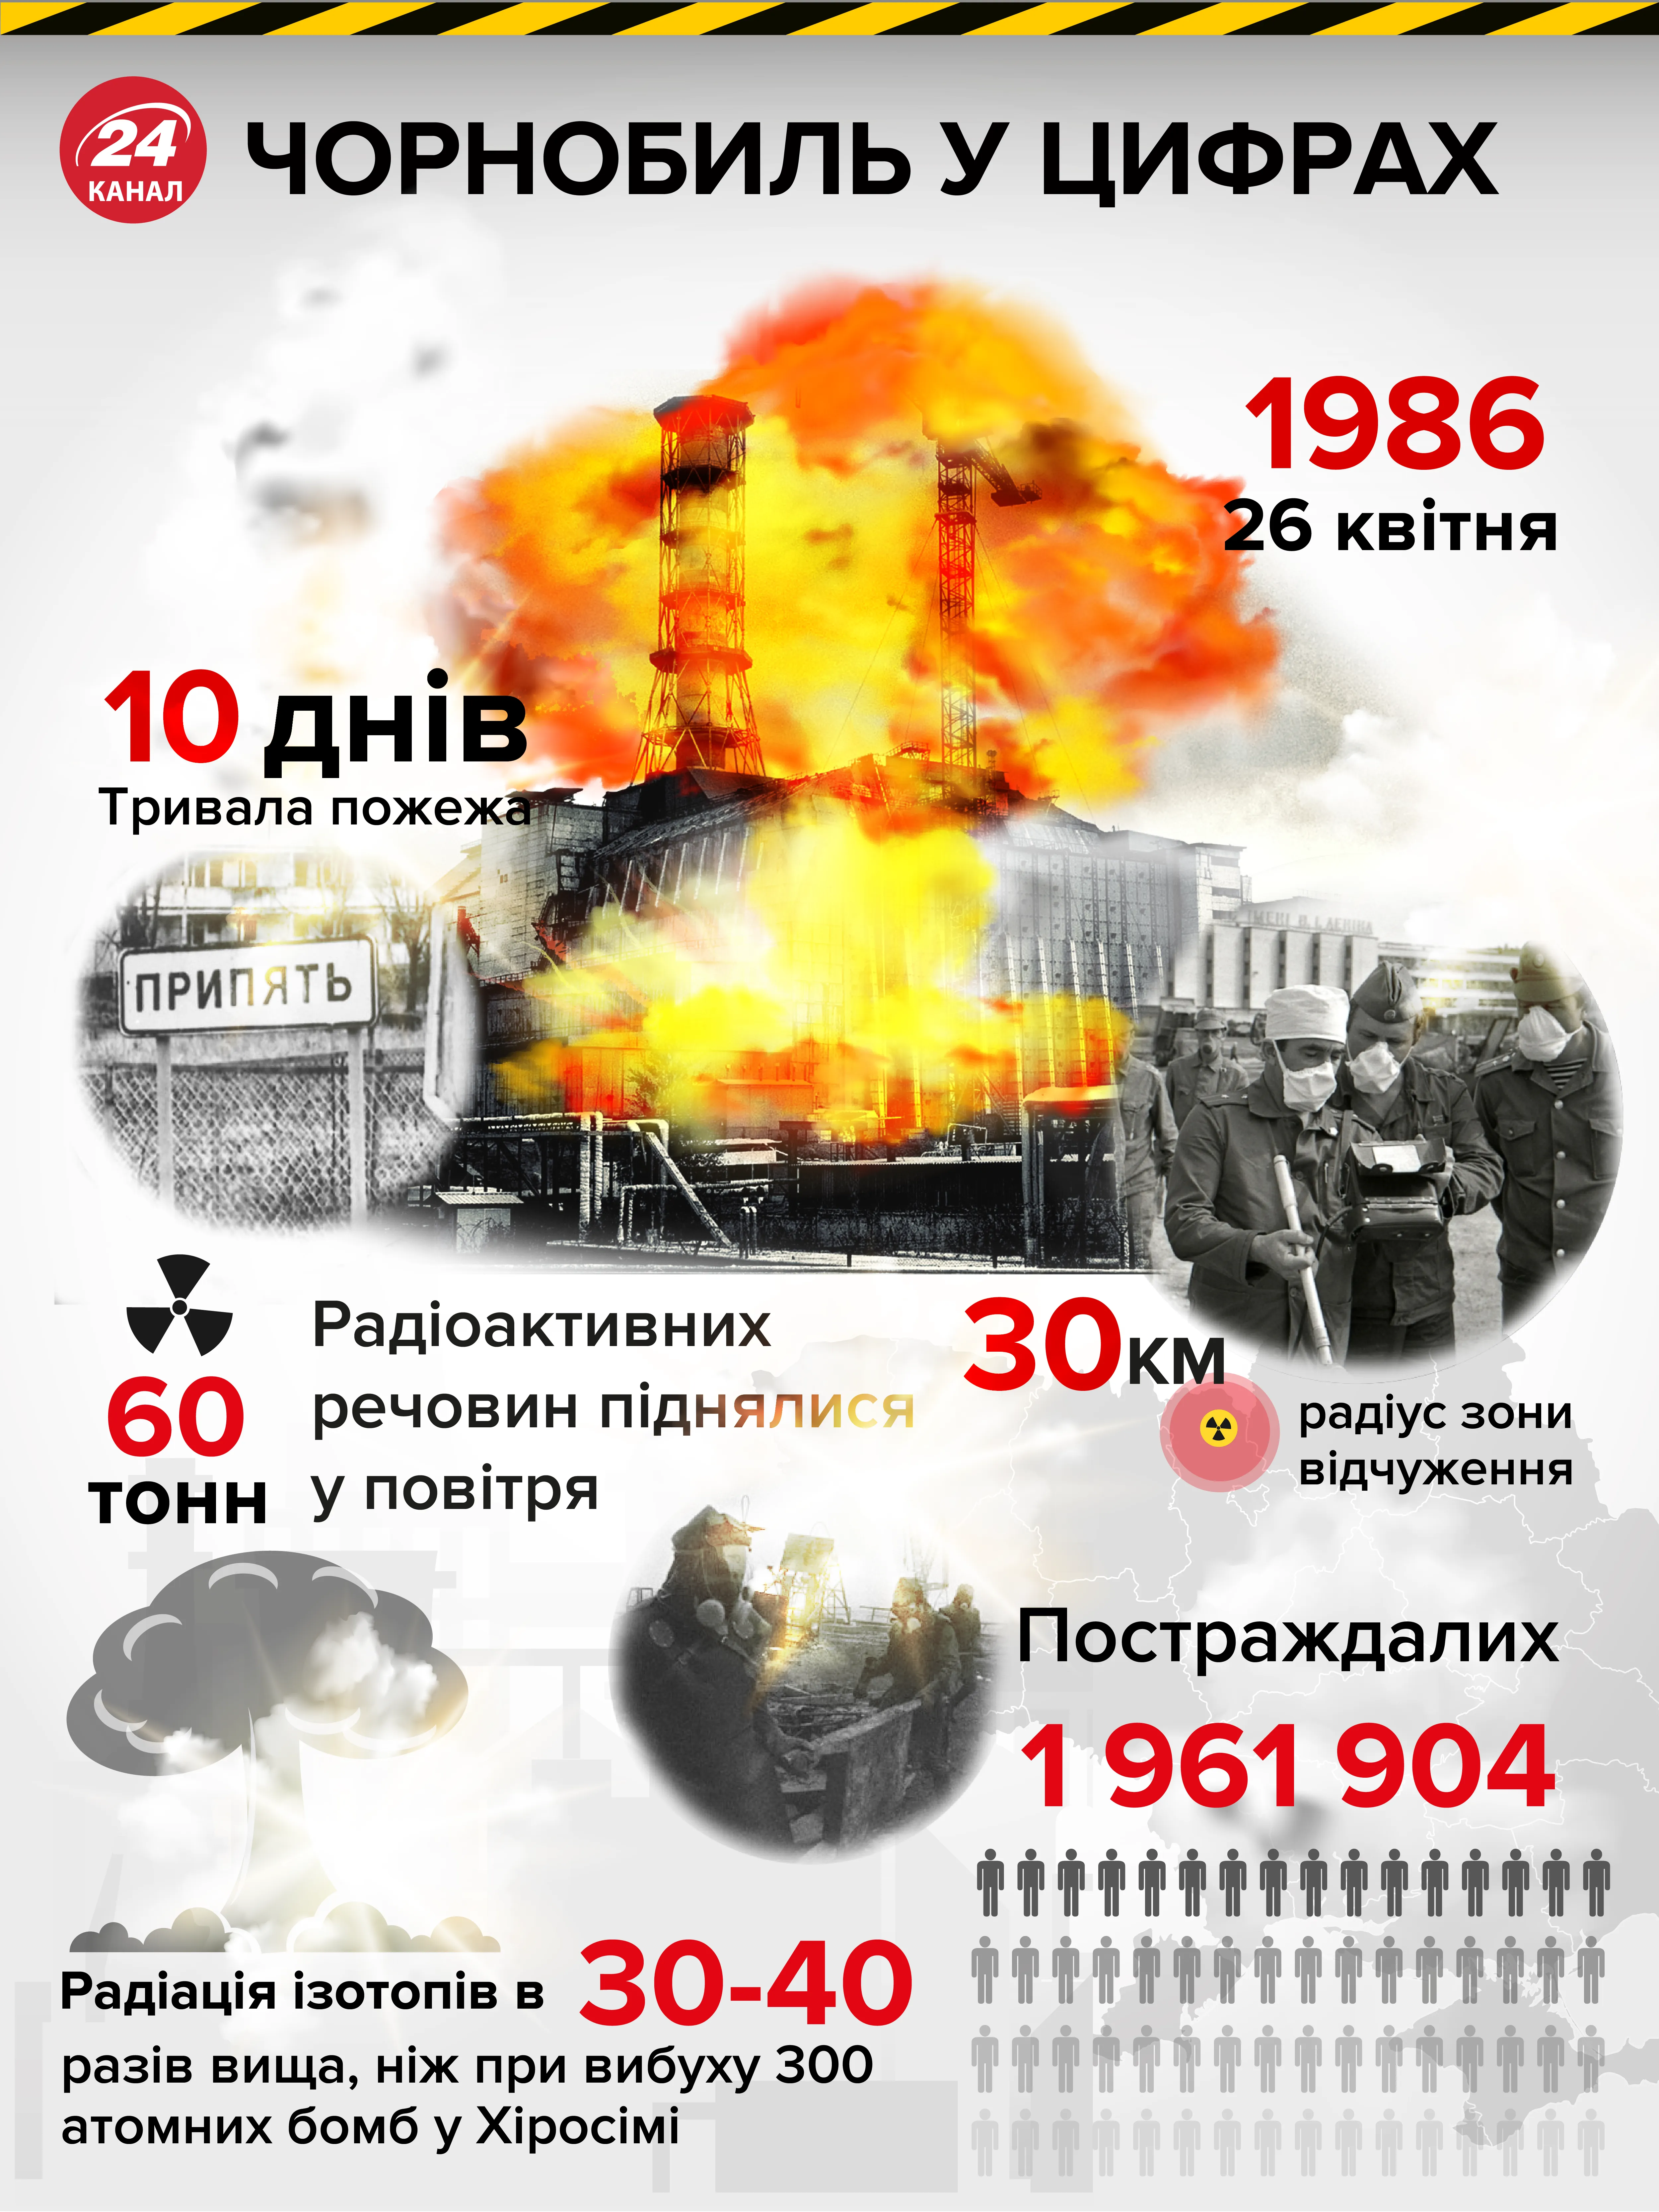 Аварія у Чорнобилі в цифрах 